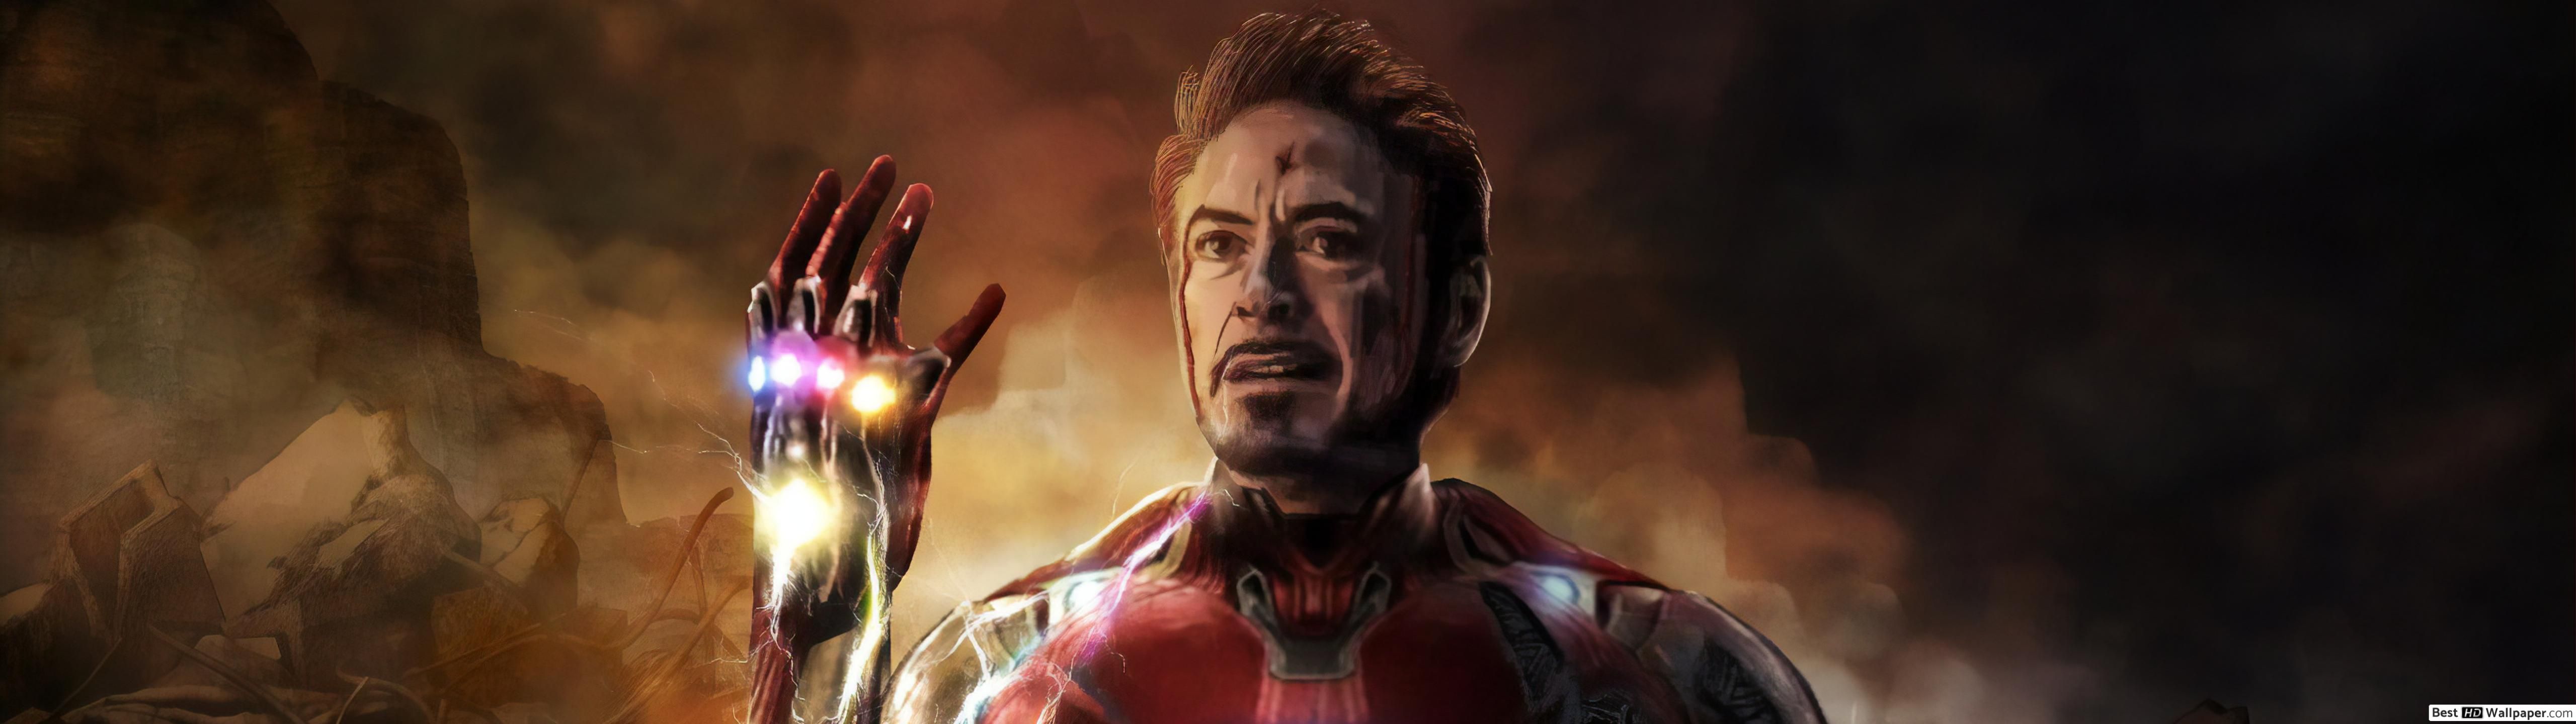 Iron Man Tony Stark Endgame